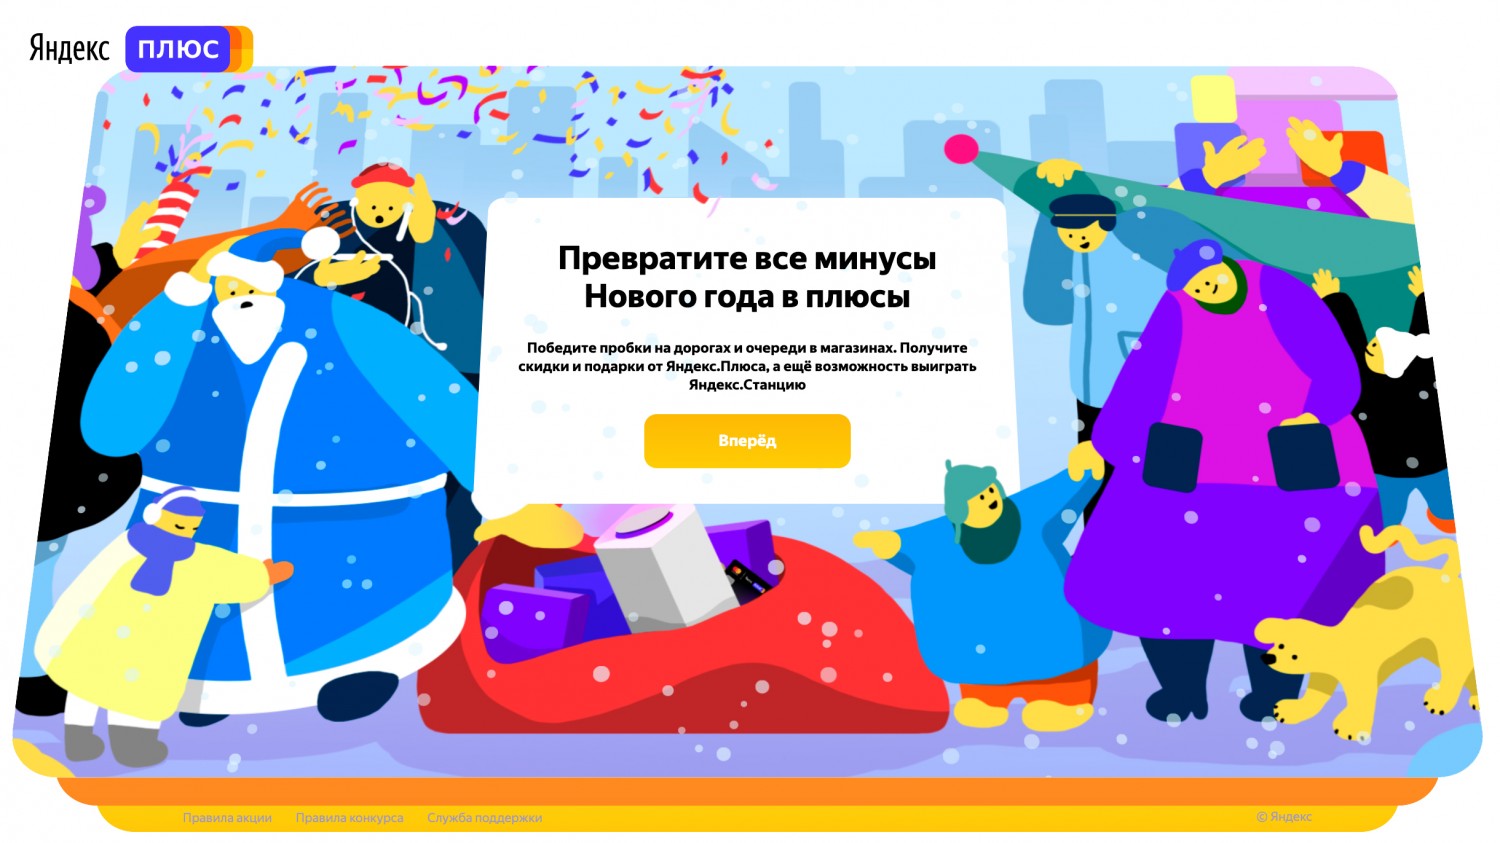 Новогодние промокоды и скидки на сервисы «Яндекса»